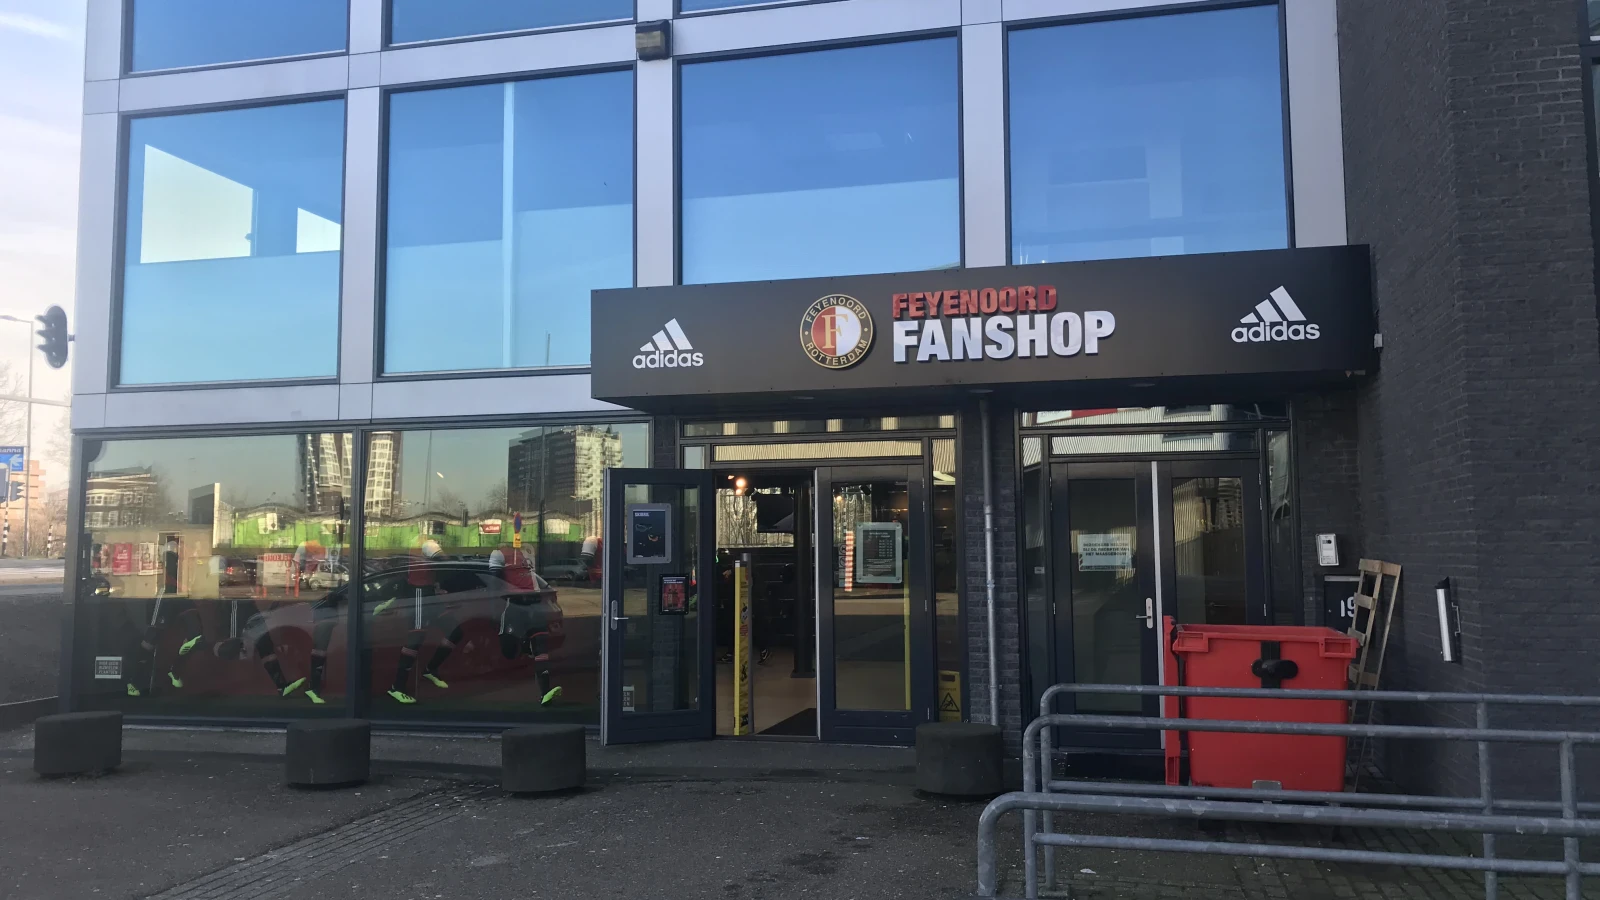 Winterse weken in de Feyenoord Fanshop, met artikelen speciaal voor de winter